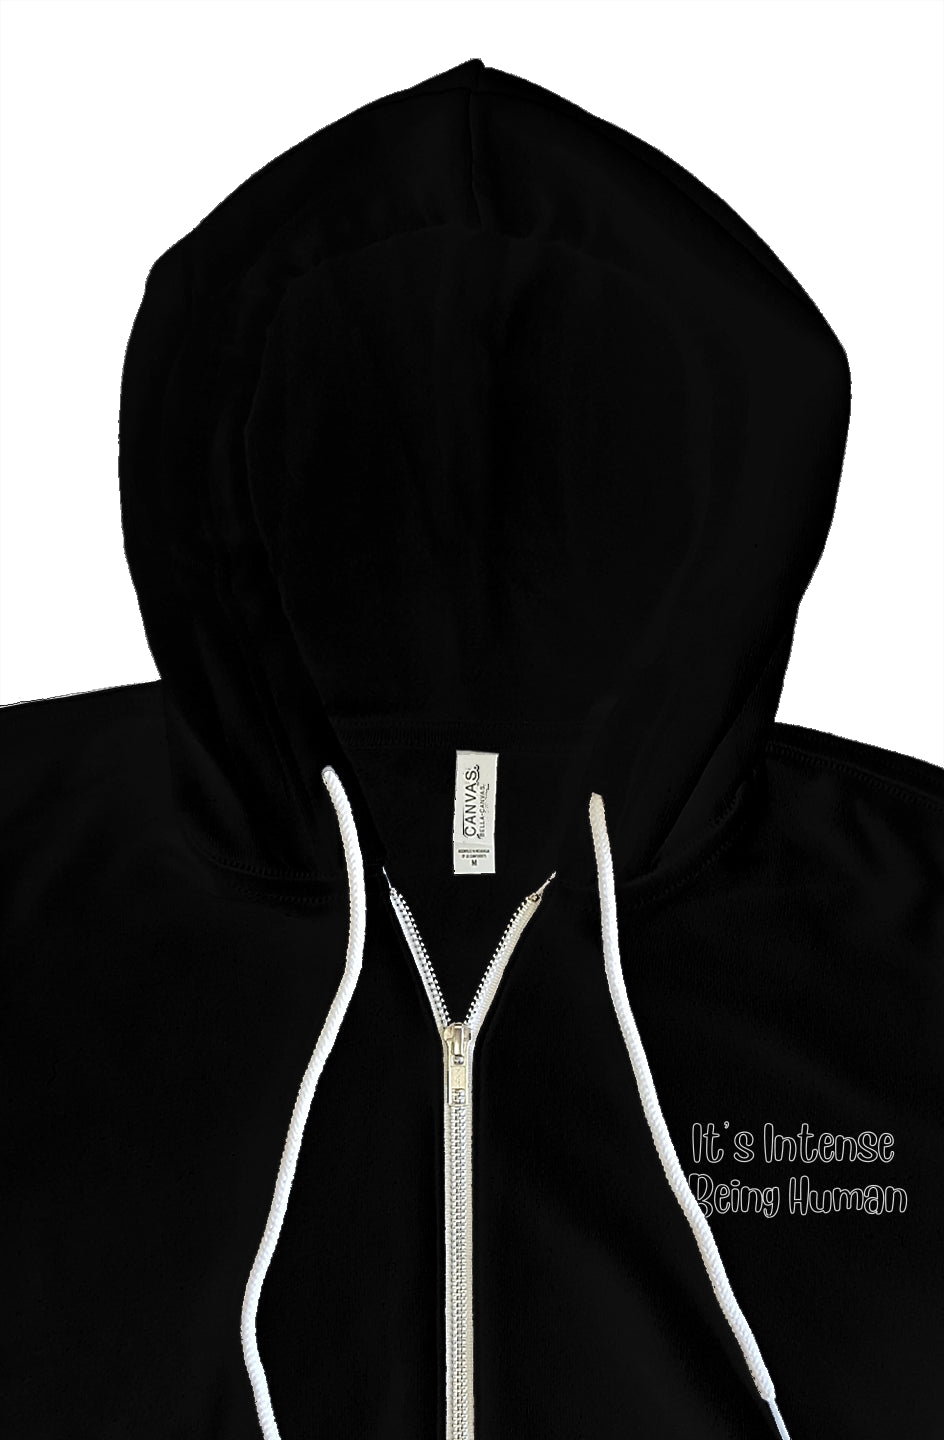 intense being human embrodery black zip hoody